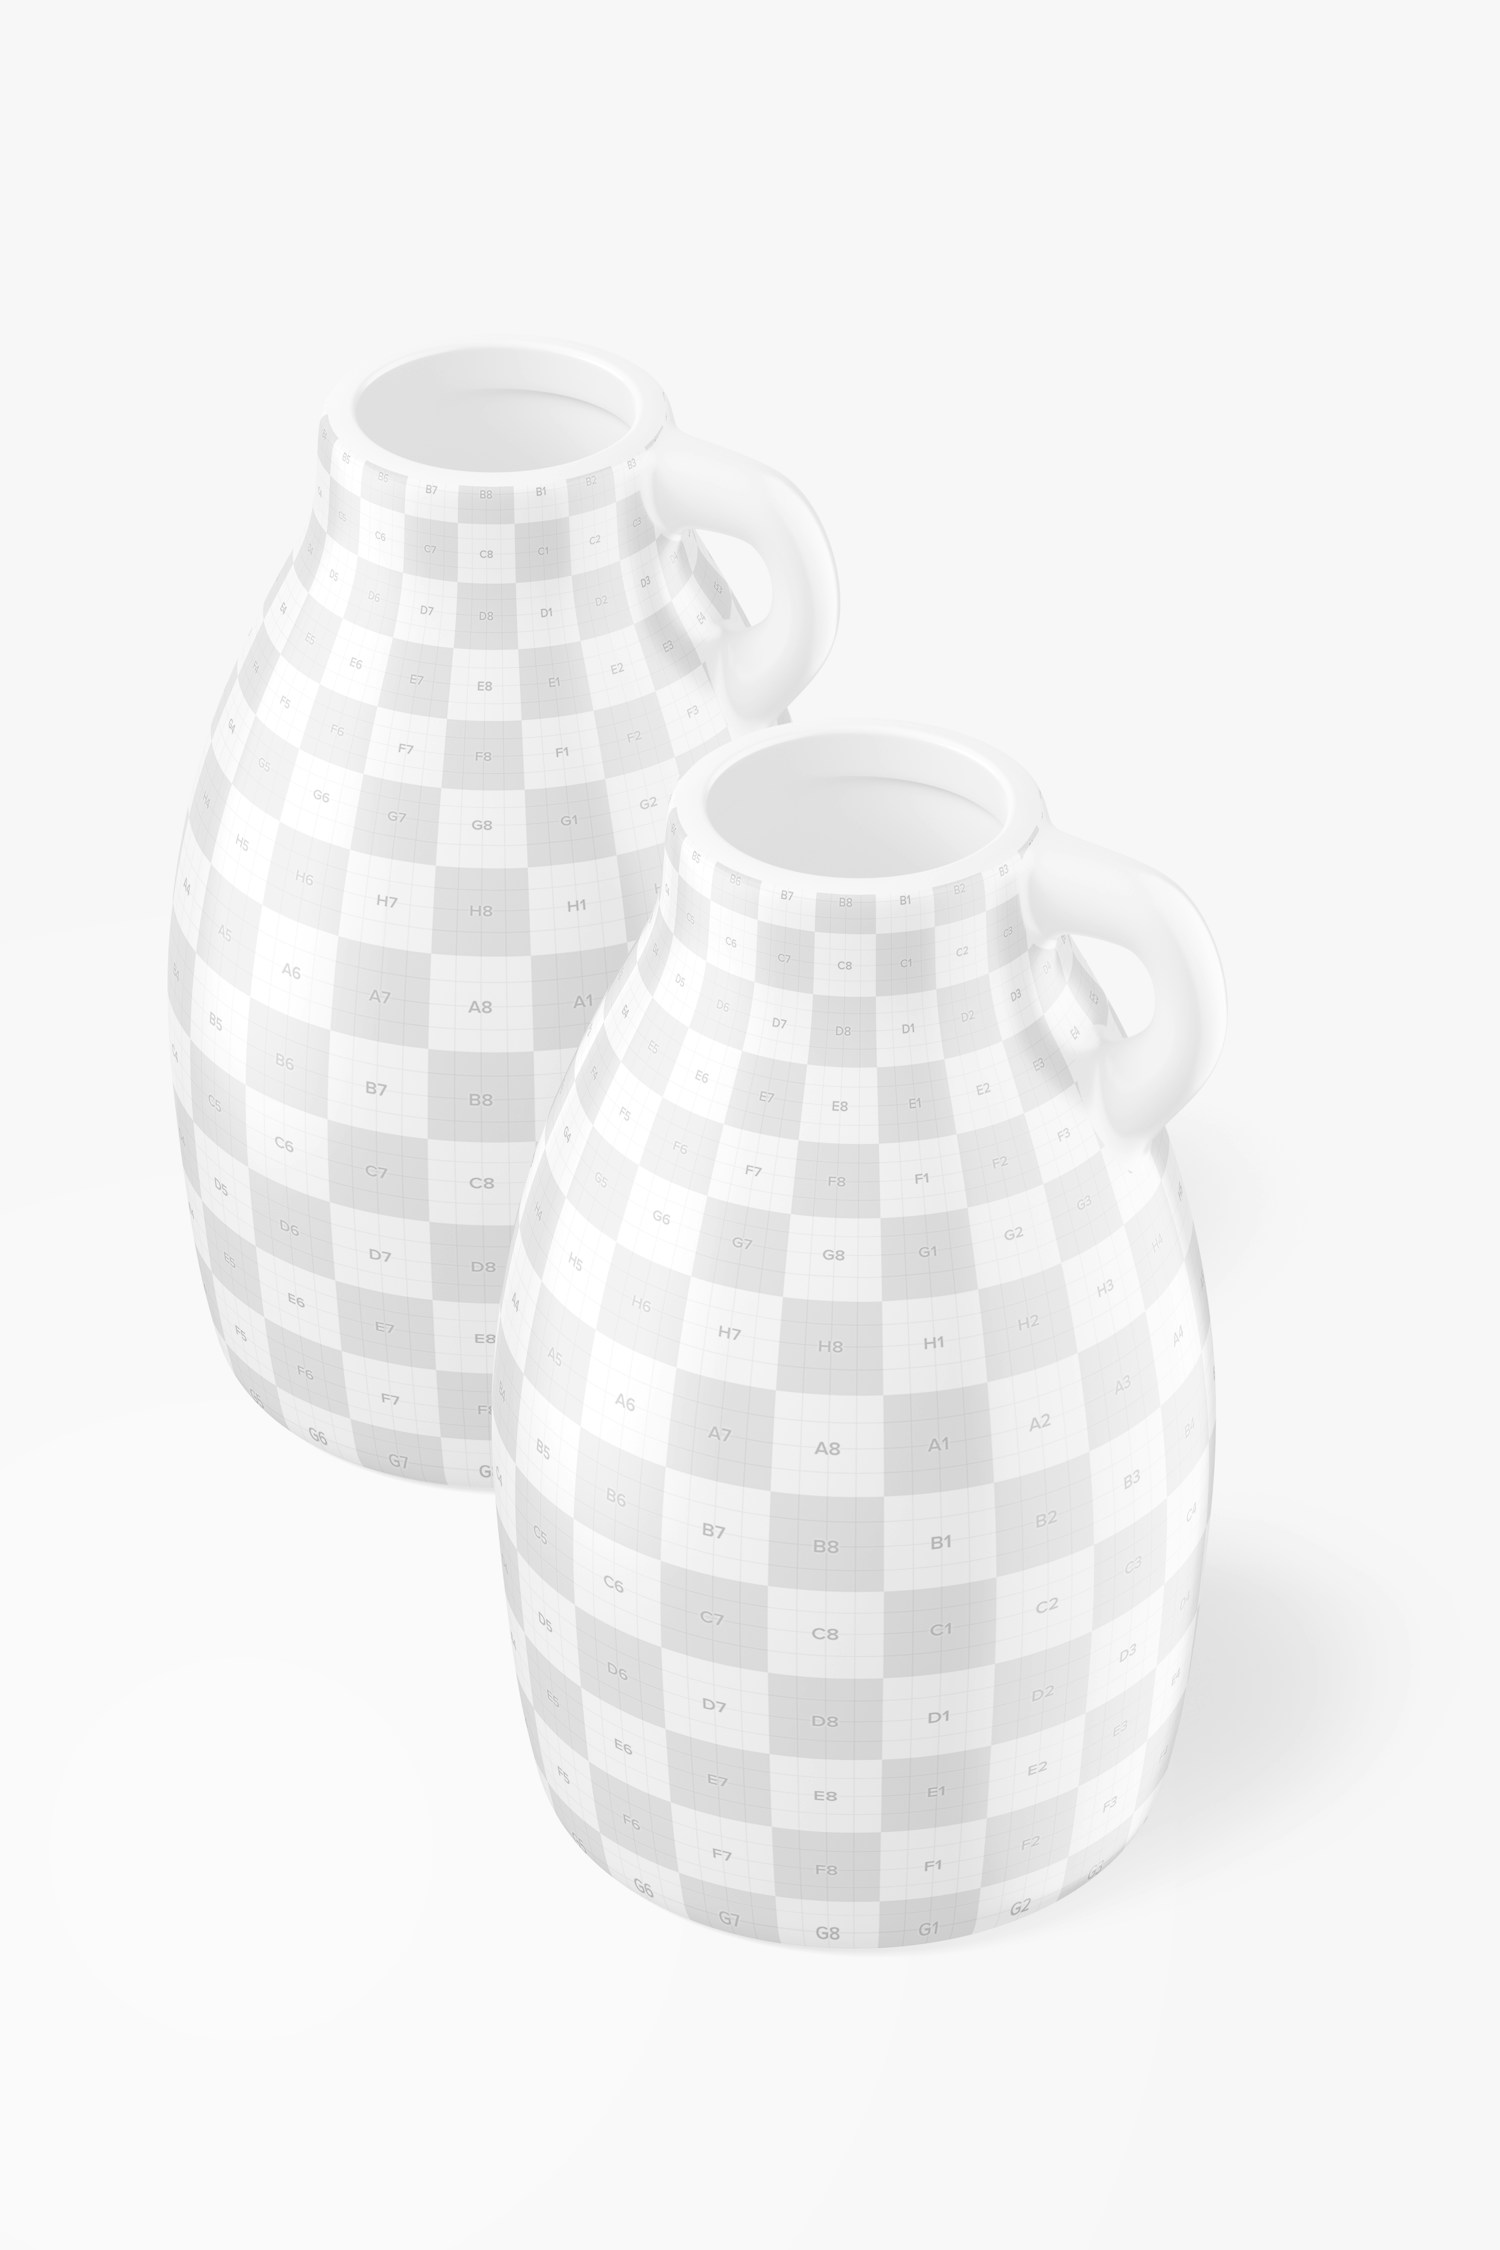 Ceramic Vase Mockup, Perspective View